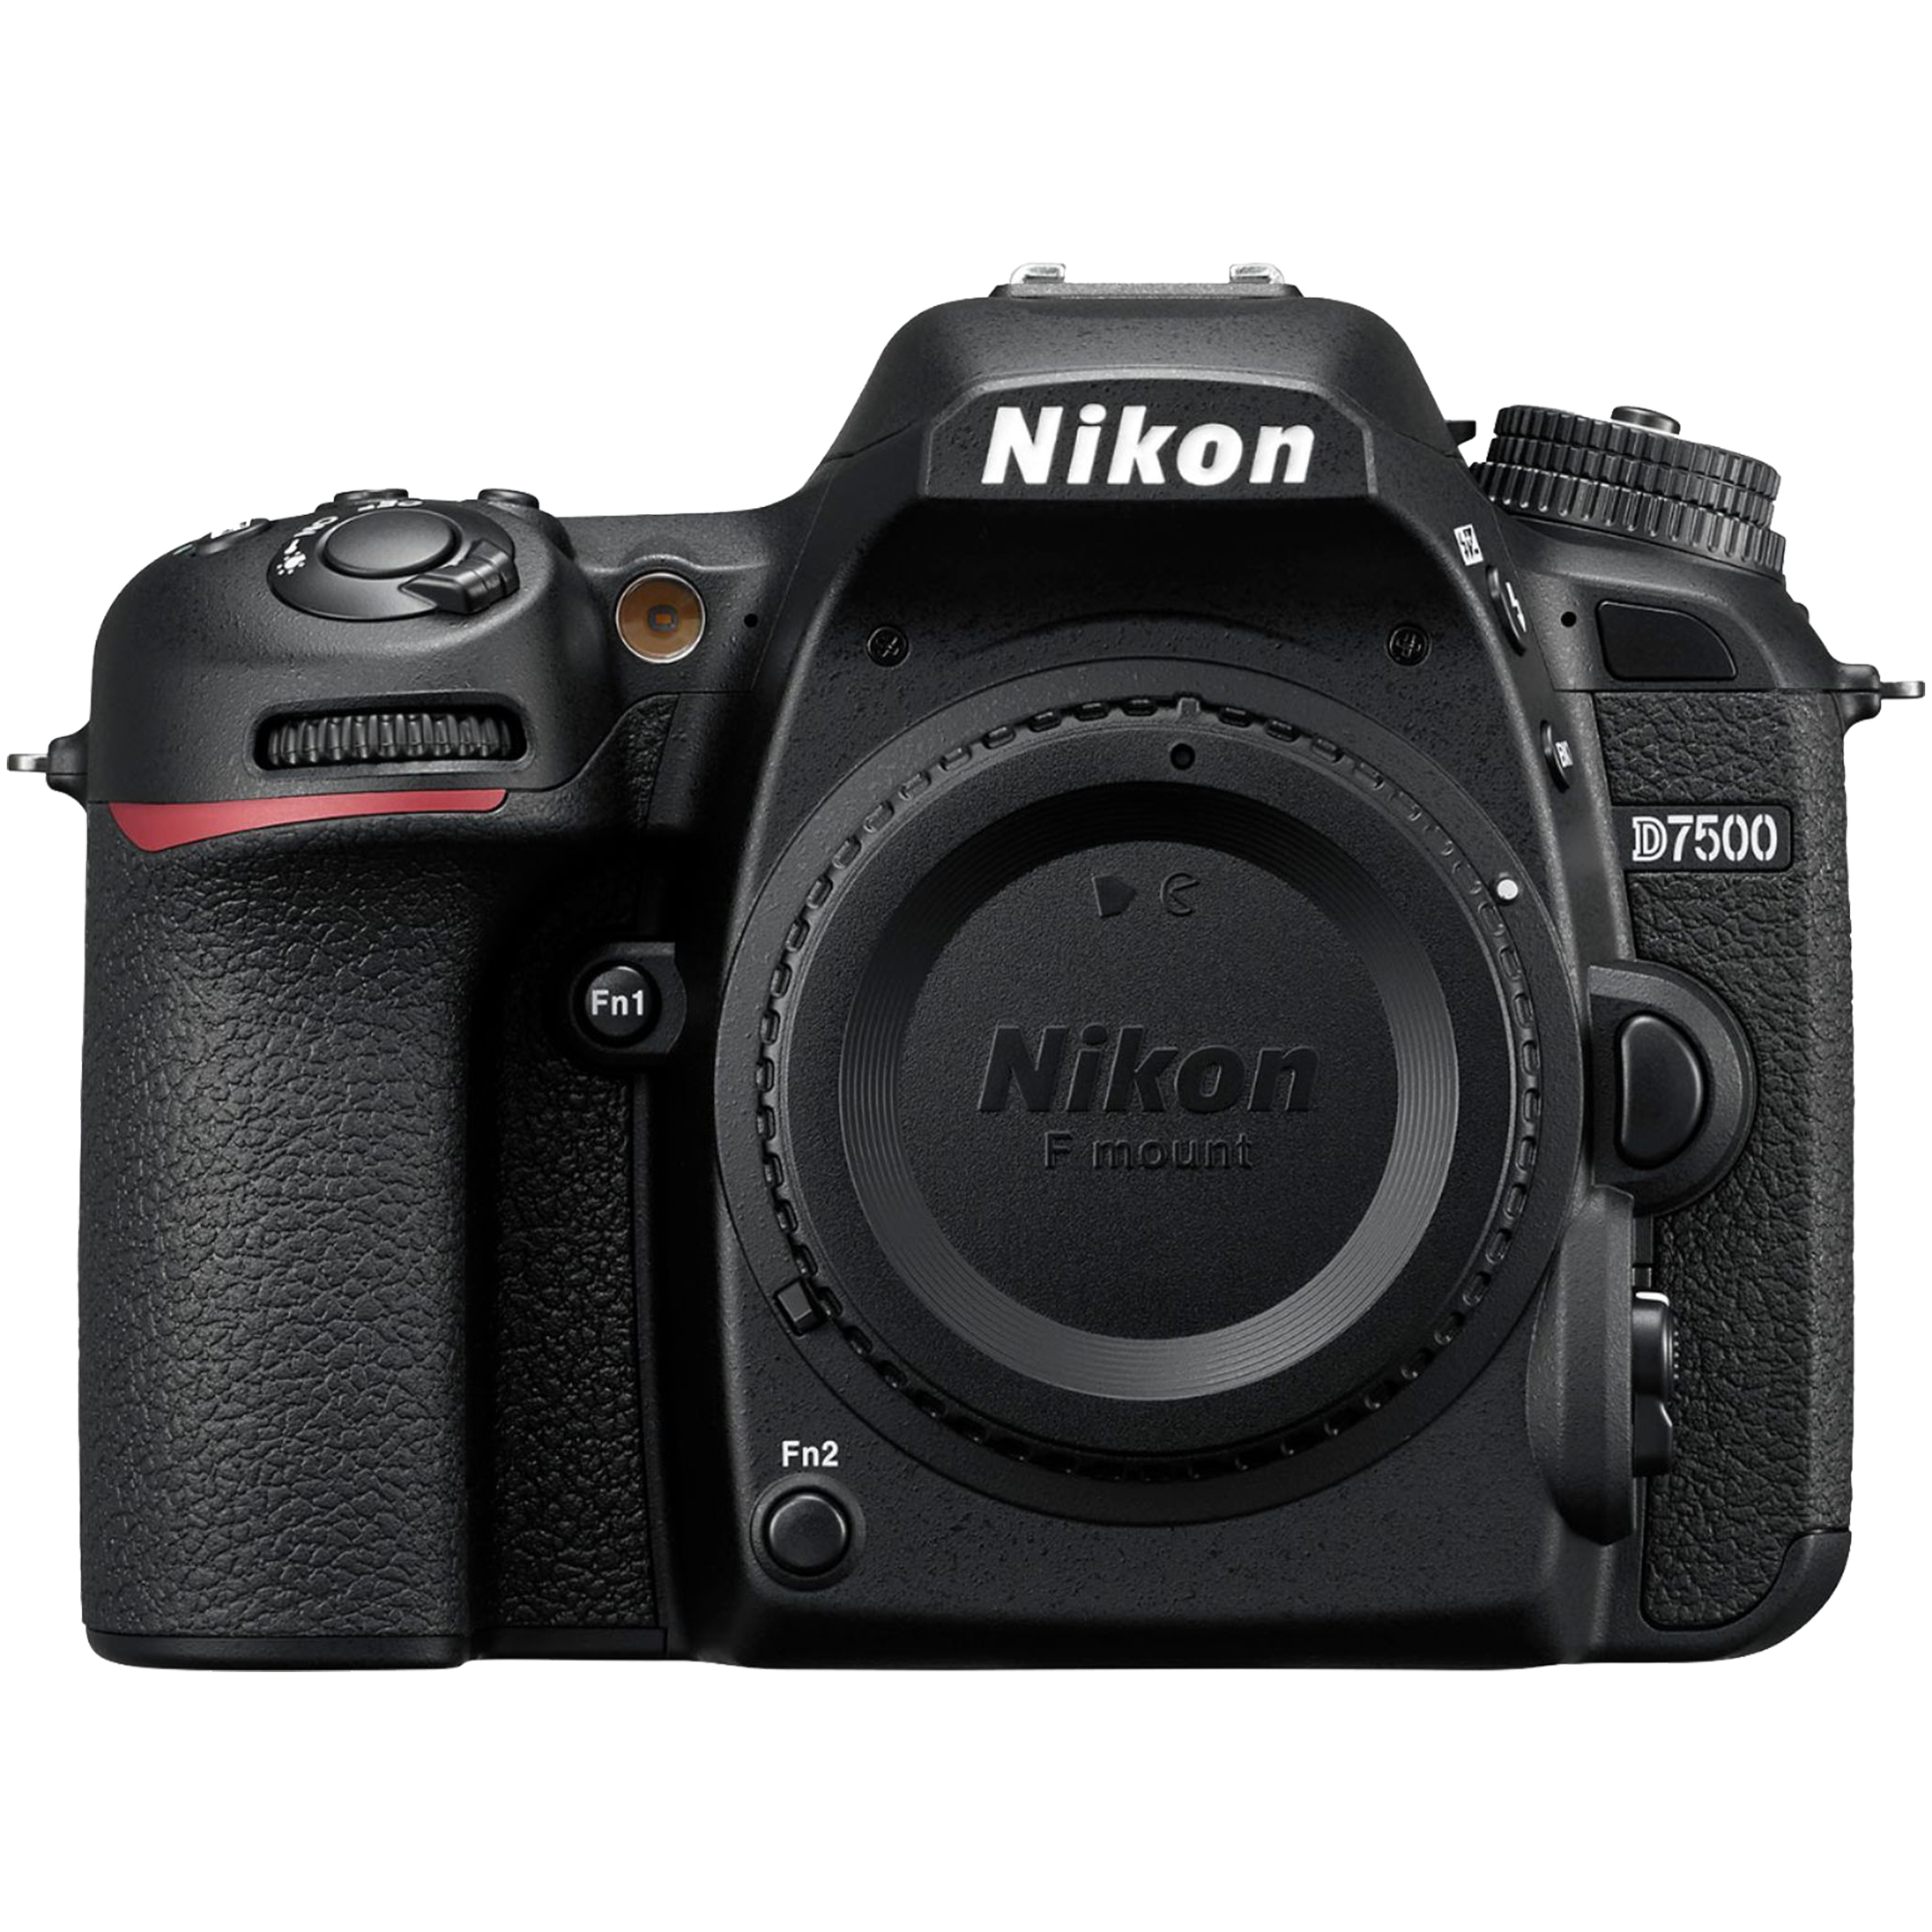 Nikon D7500 20.9MP DSLR Digital Camera w/AF-P DX NIKKOR 18-55mm f/3.5-5.6G VR Lens & AF-P DX 70-300mm f/4.5-6.3G ED Lens + 2 Pcs SanDisk 32GB Memory Card + Accessory Bundle (Black) - image 3 of 10